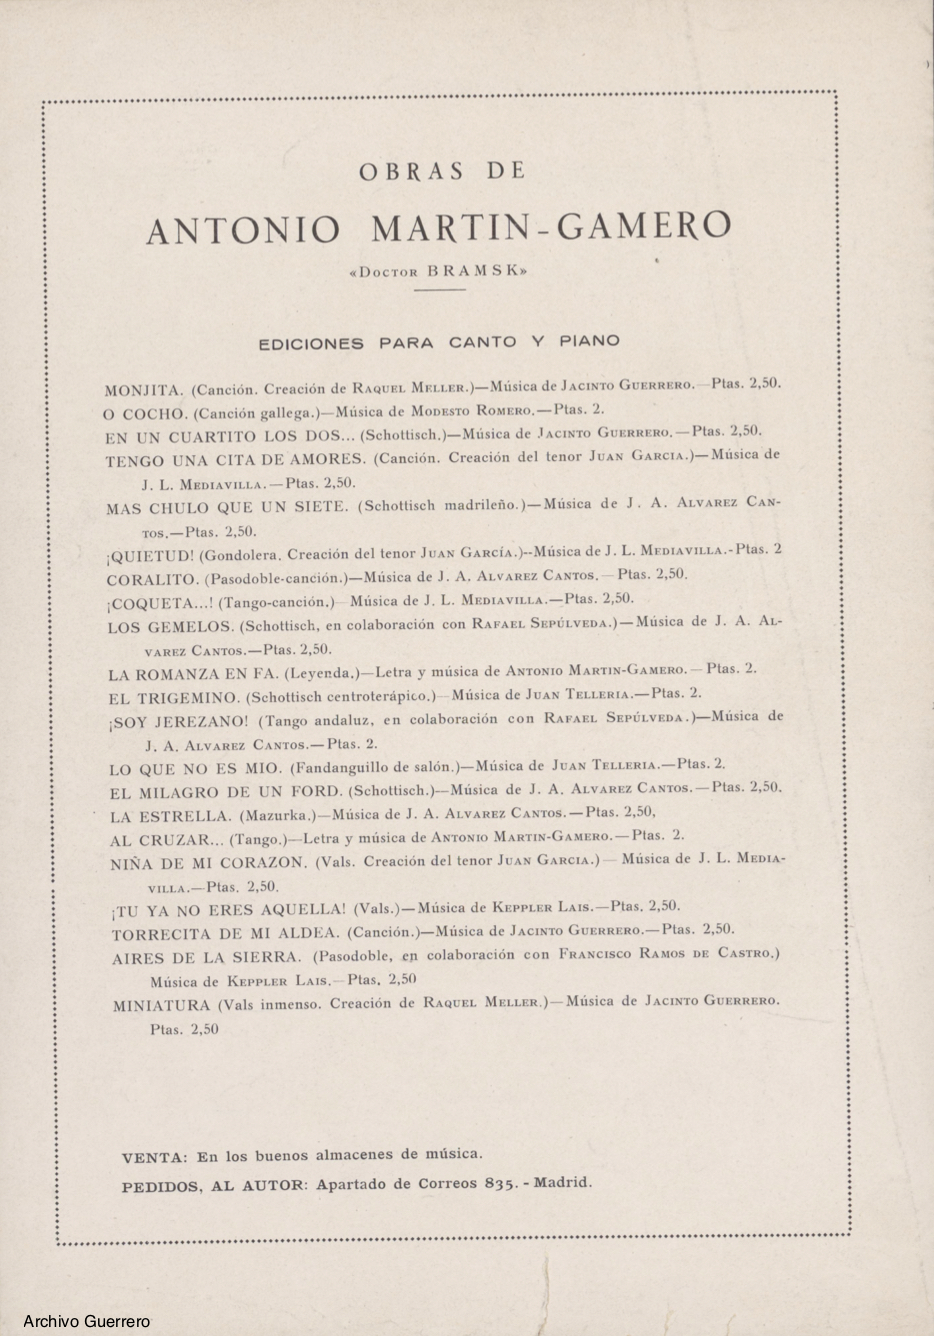 Obras de Antonio Martín-Gamero (Doctor Bramsk). En "¡Miniatura!"